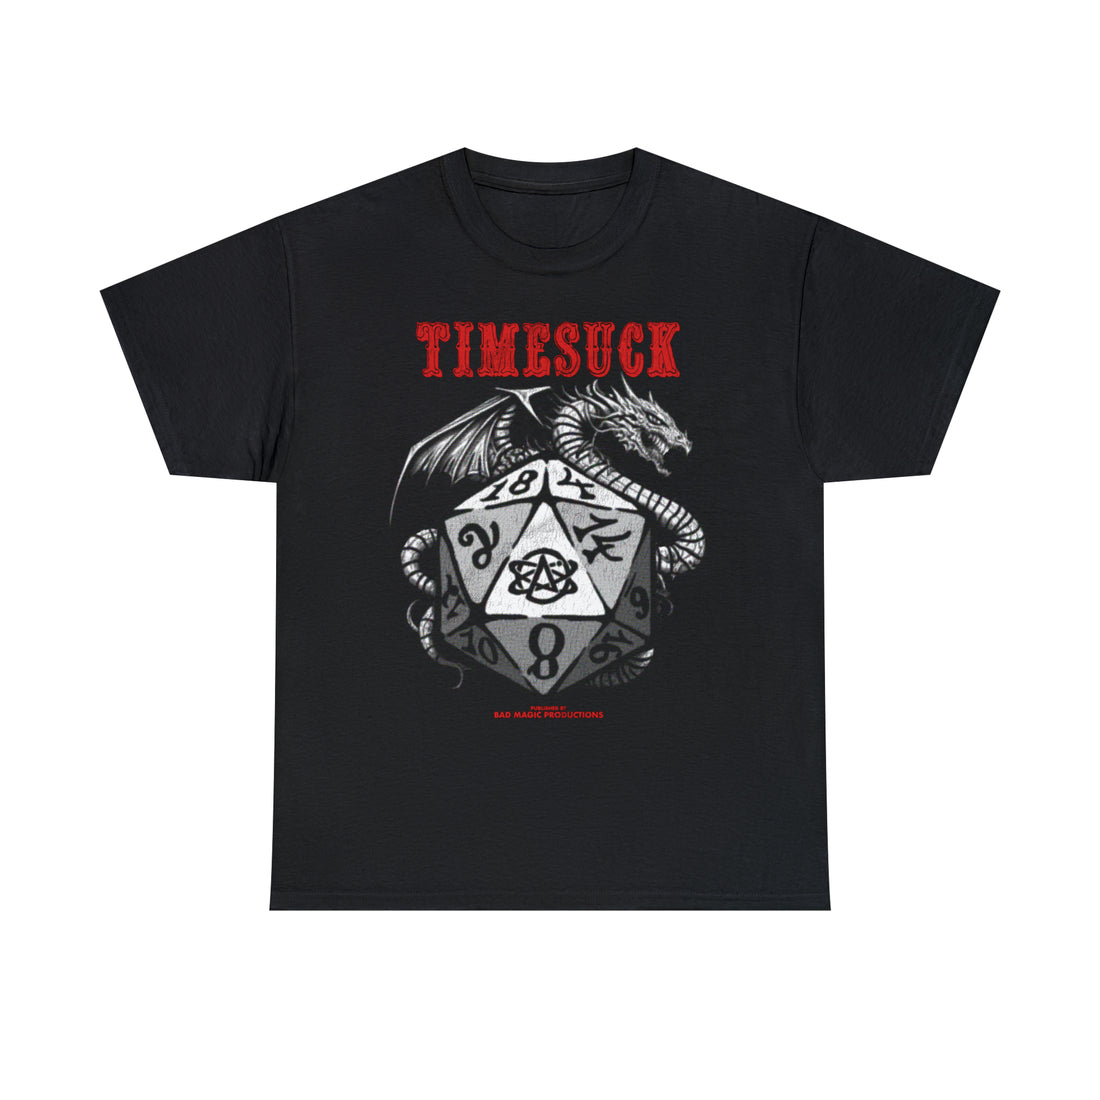 Timesuck & Dragons Tee (B&T)